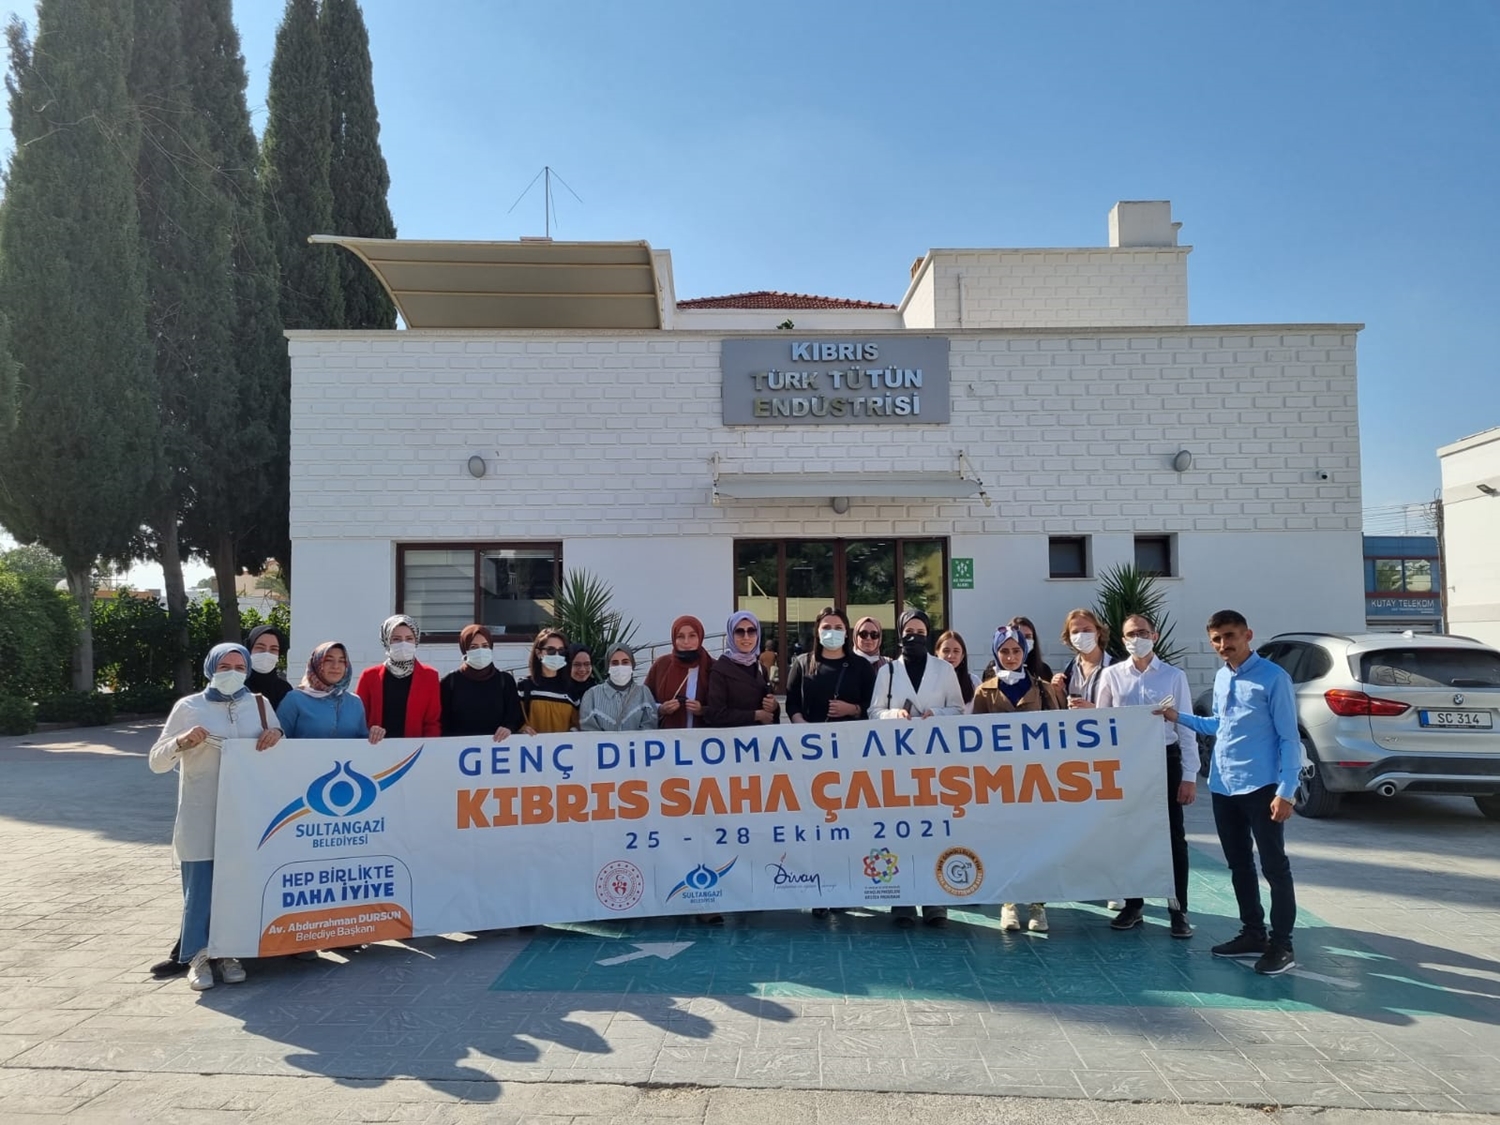 Geleceğin diplomatlarından Kıbrıs ziyareti